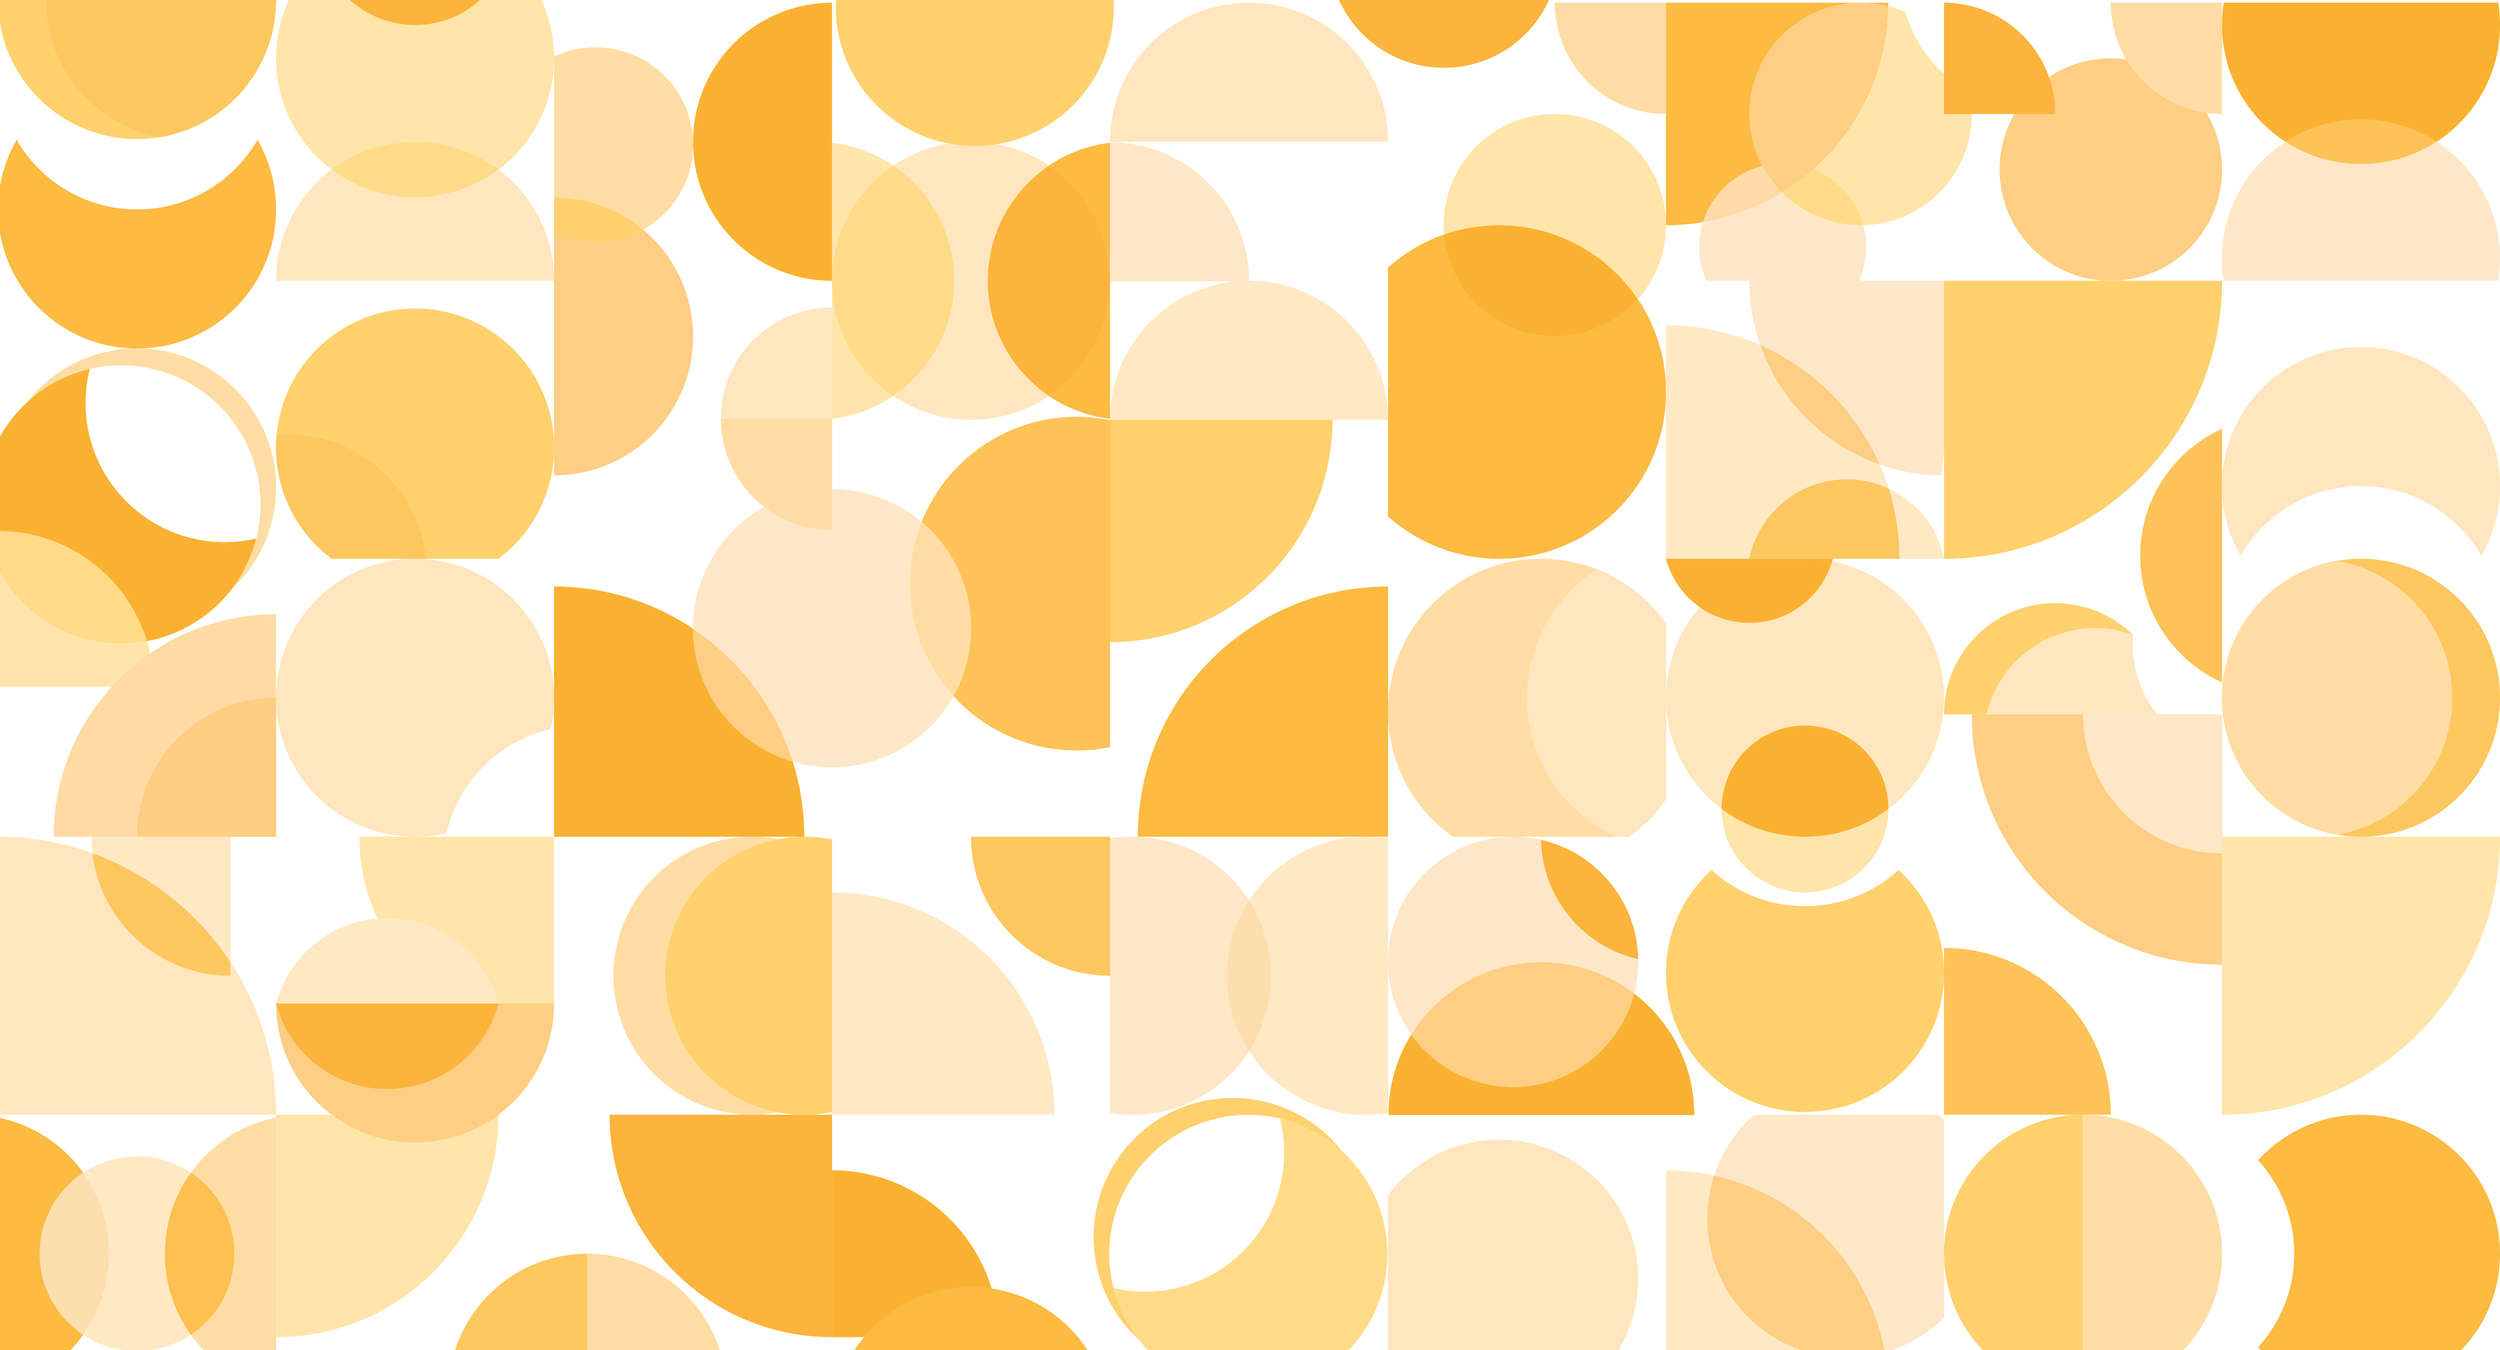             Papier peint rétro, motifs géométriques - orange, jaune, blanc
        